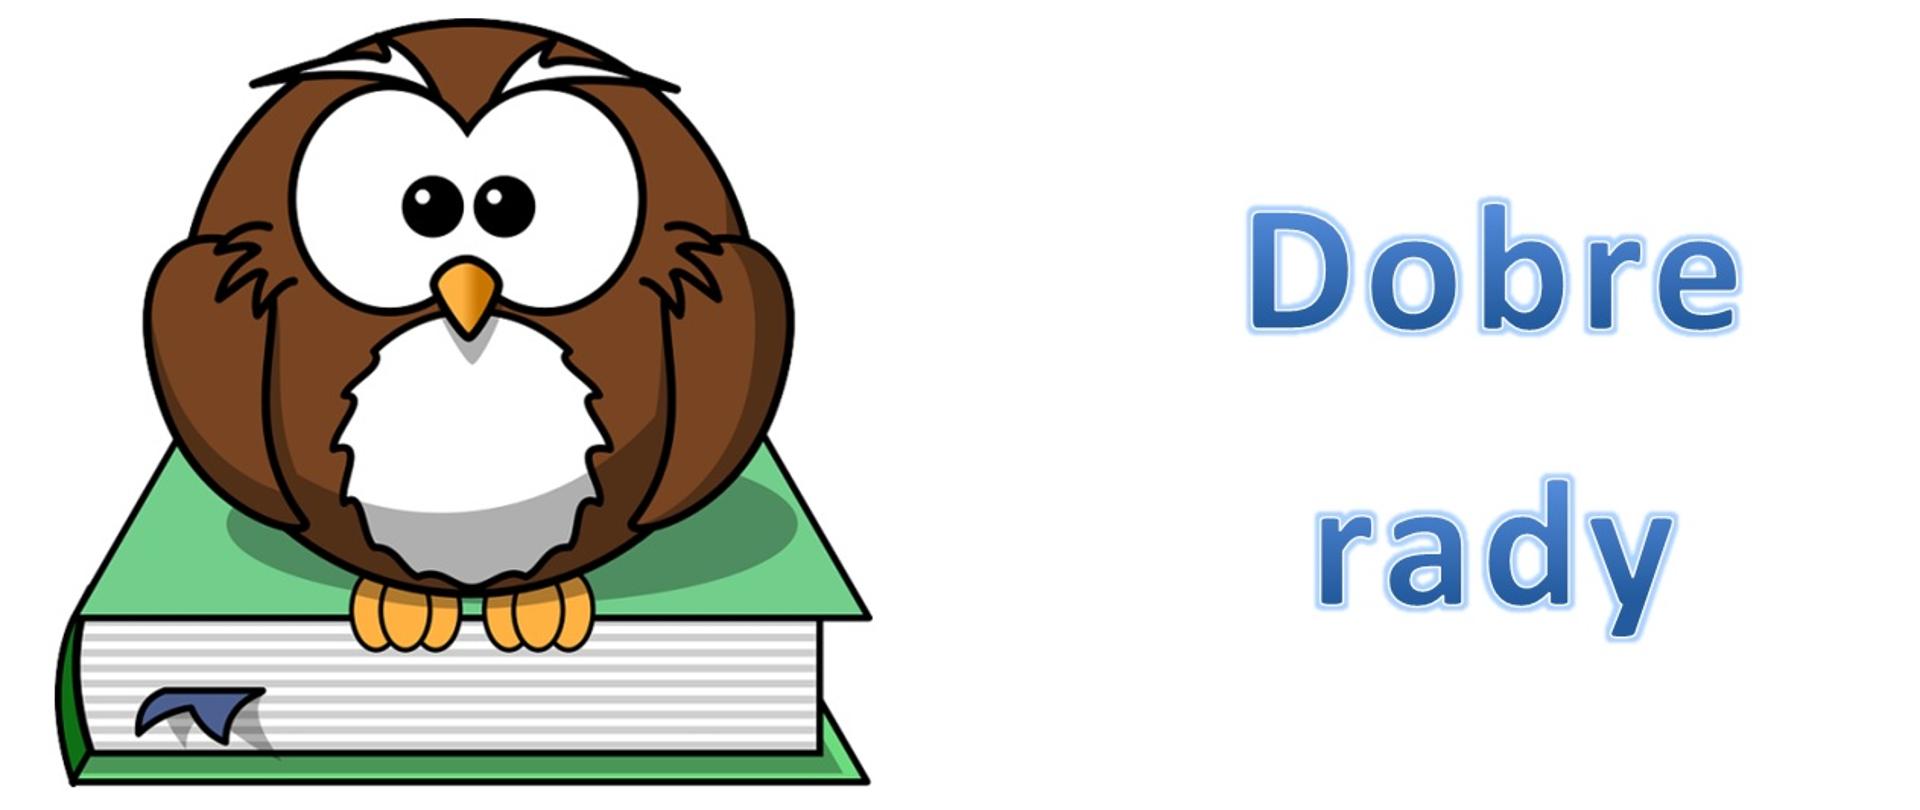 Fotografia przedstawia kreskówkową sowę siedzącą na książce.i niebieski napis dobre rady.